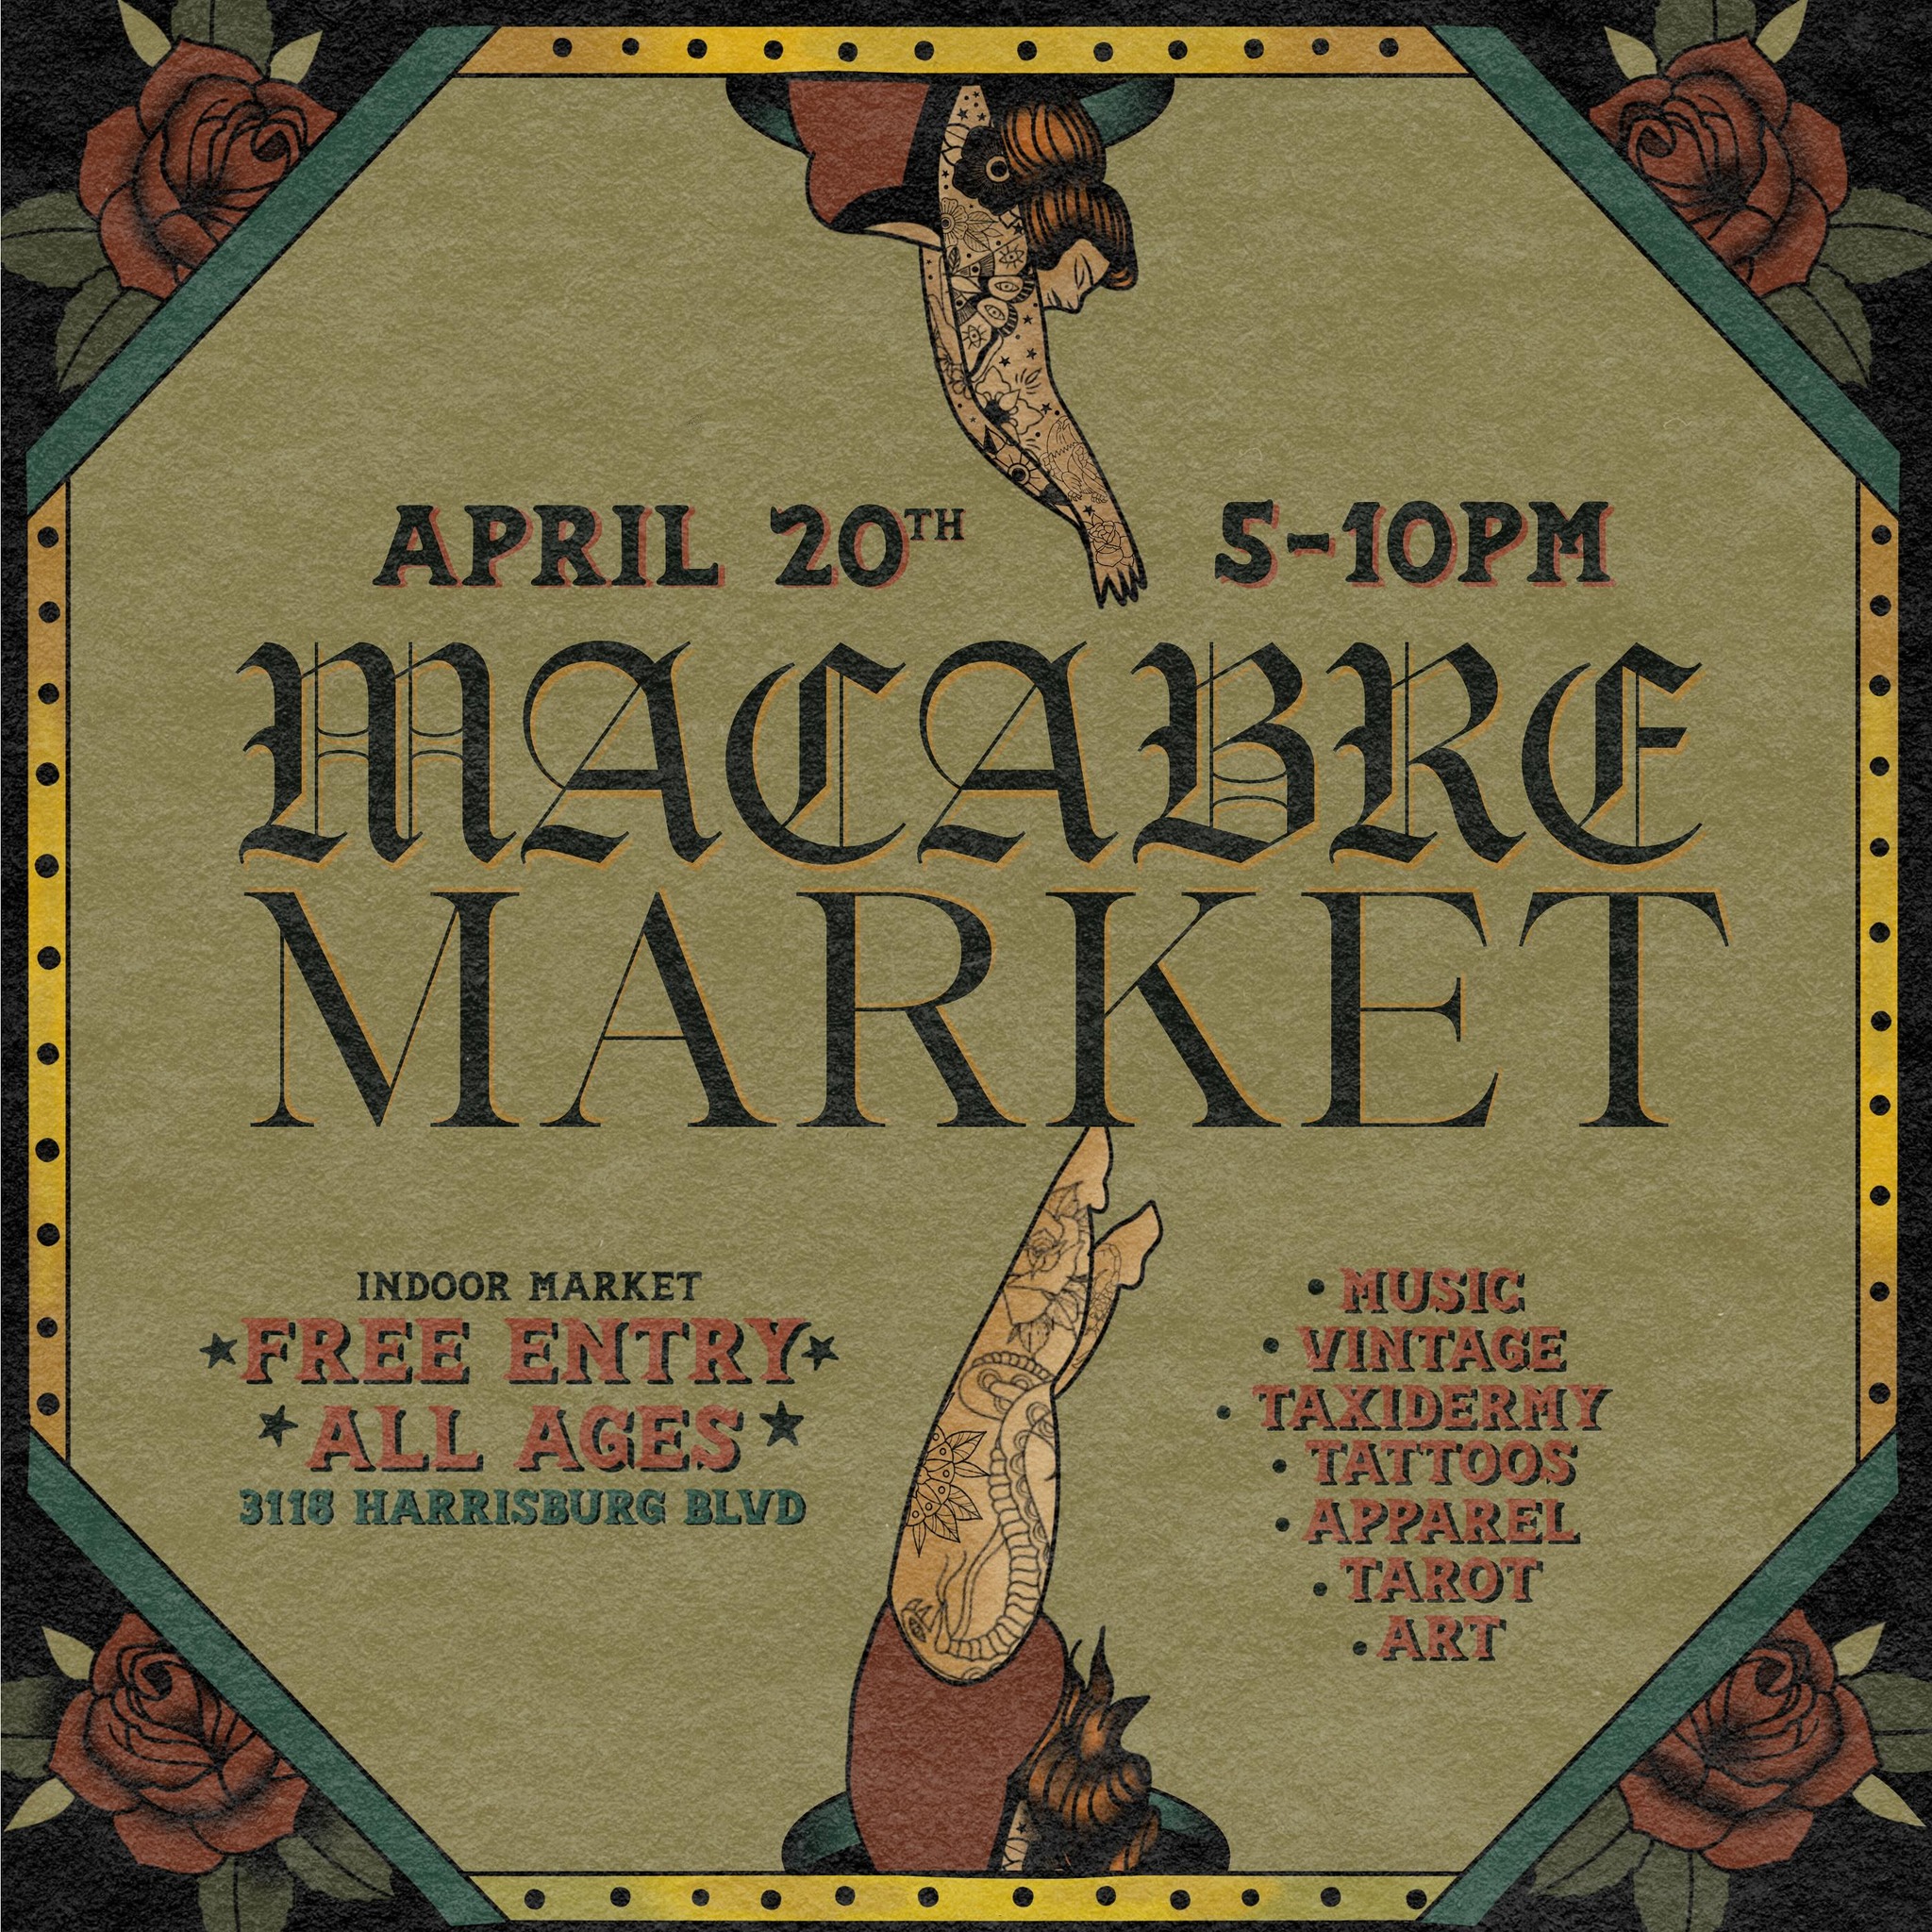 macabre market april 20 at equal parts brewing